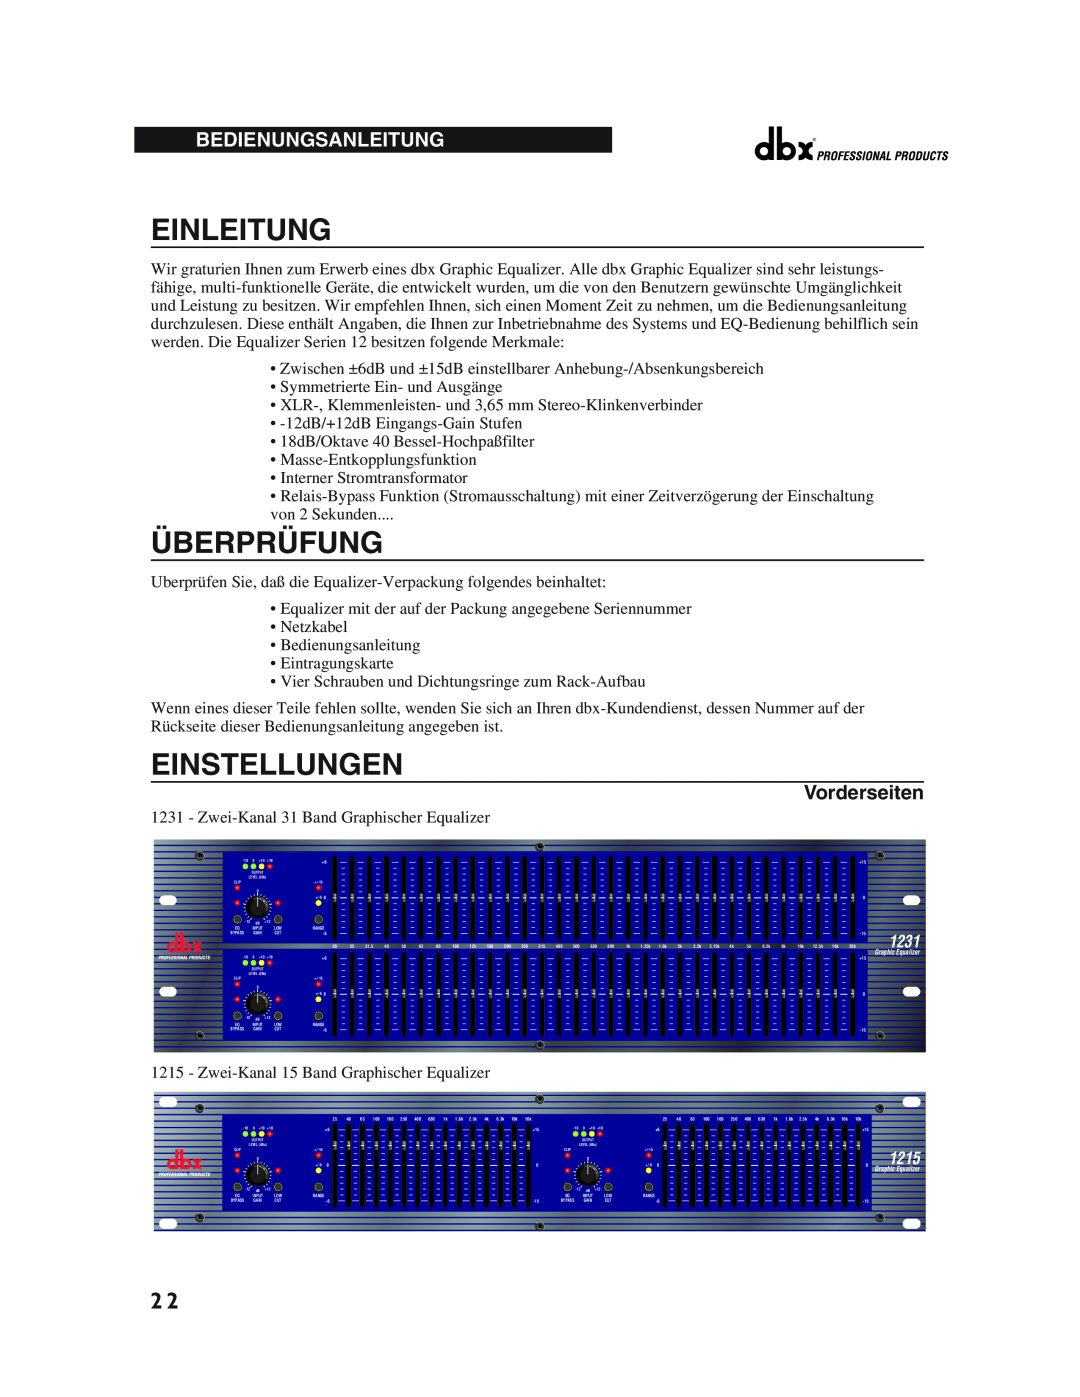 dbx Pro 12 Series operation manual Einleitung, Überprüfung, Einstellungen, Bedienungsanleitung, Vorderseiten, 1231, 1215 